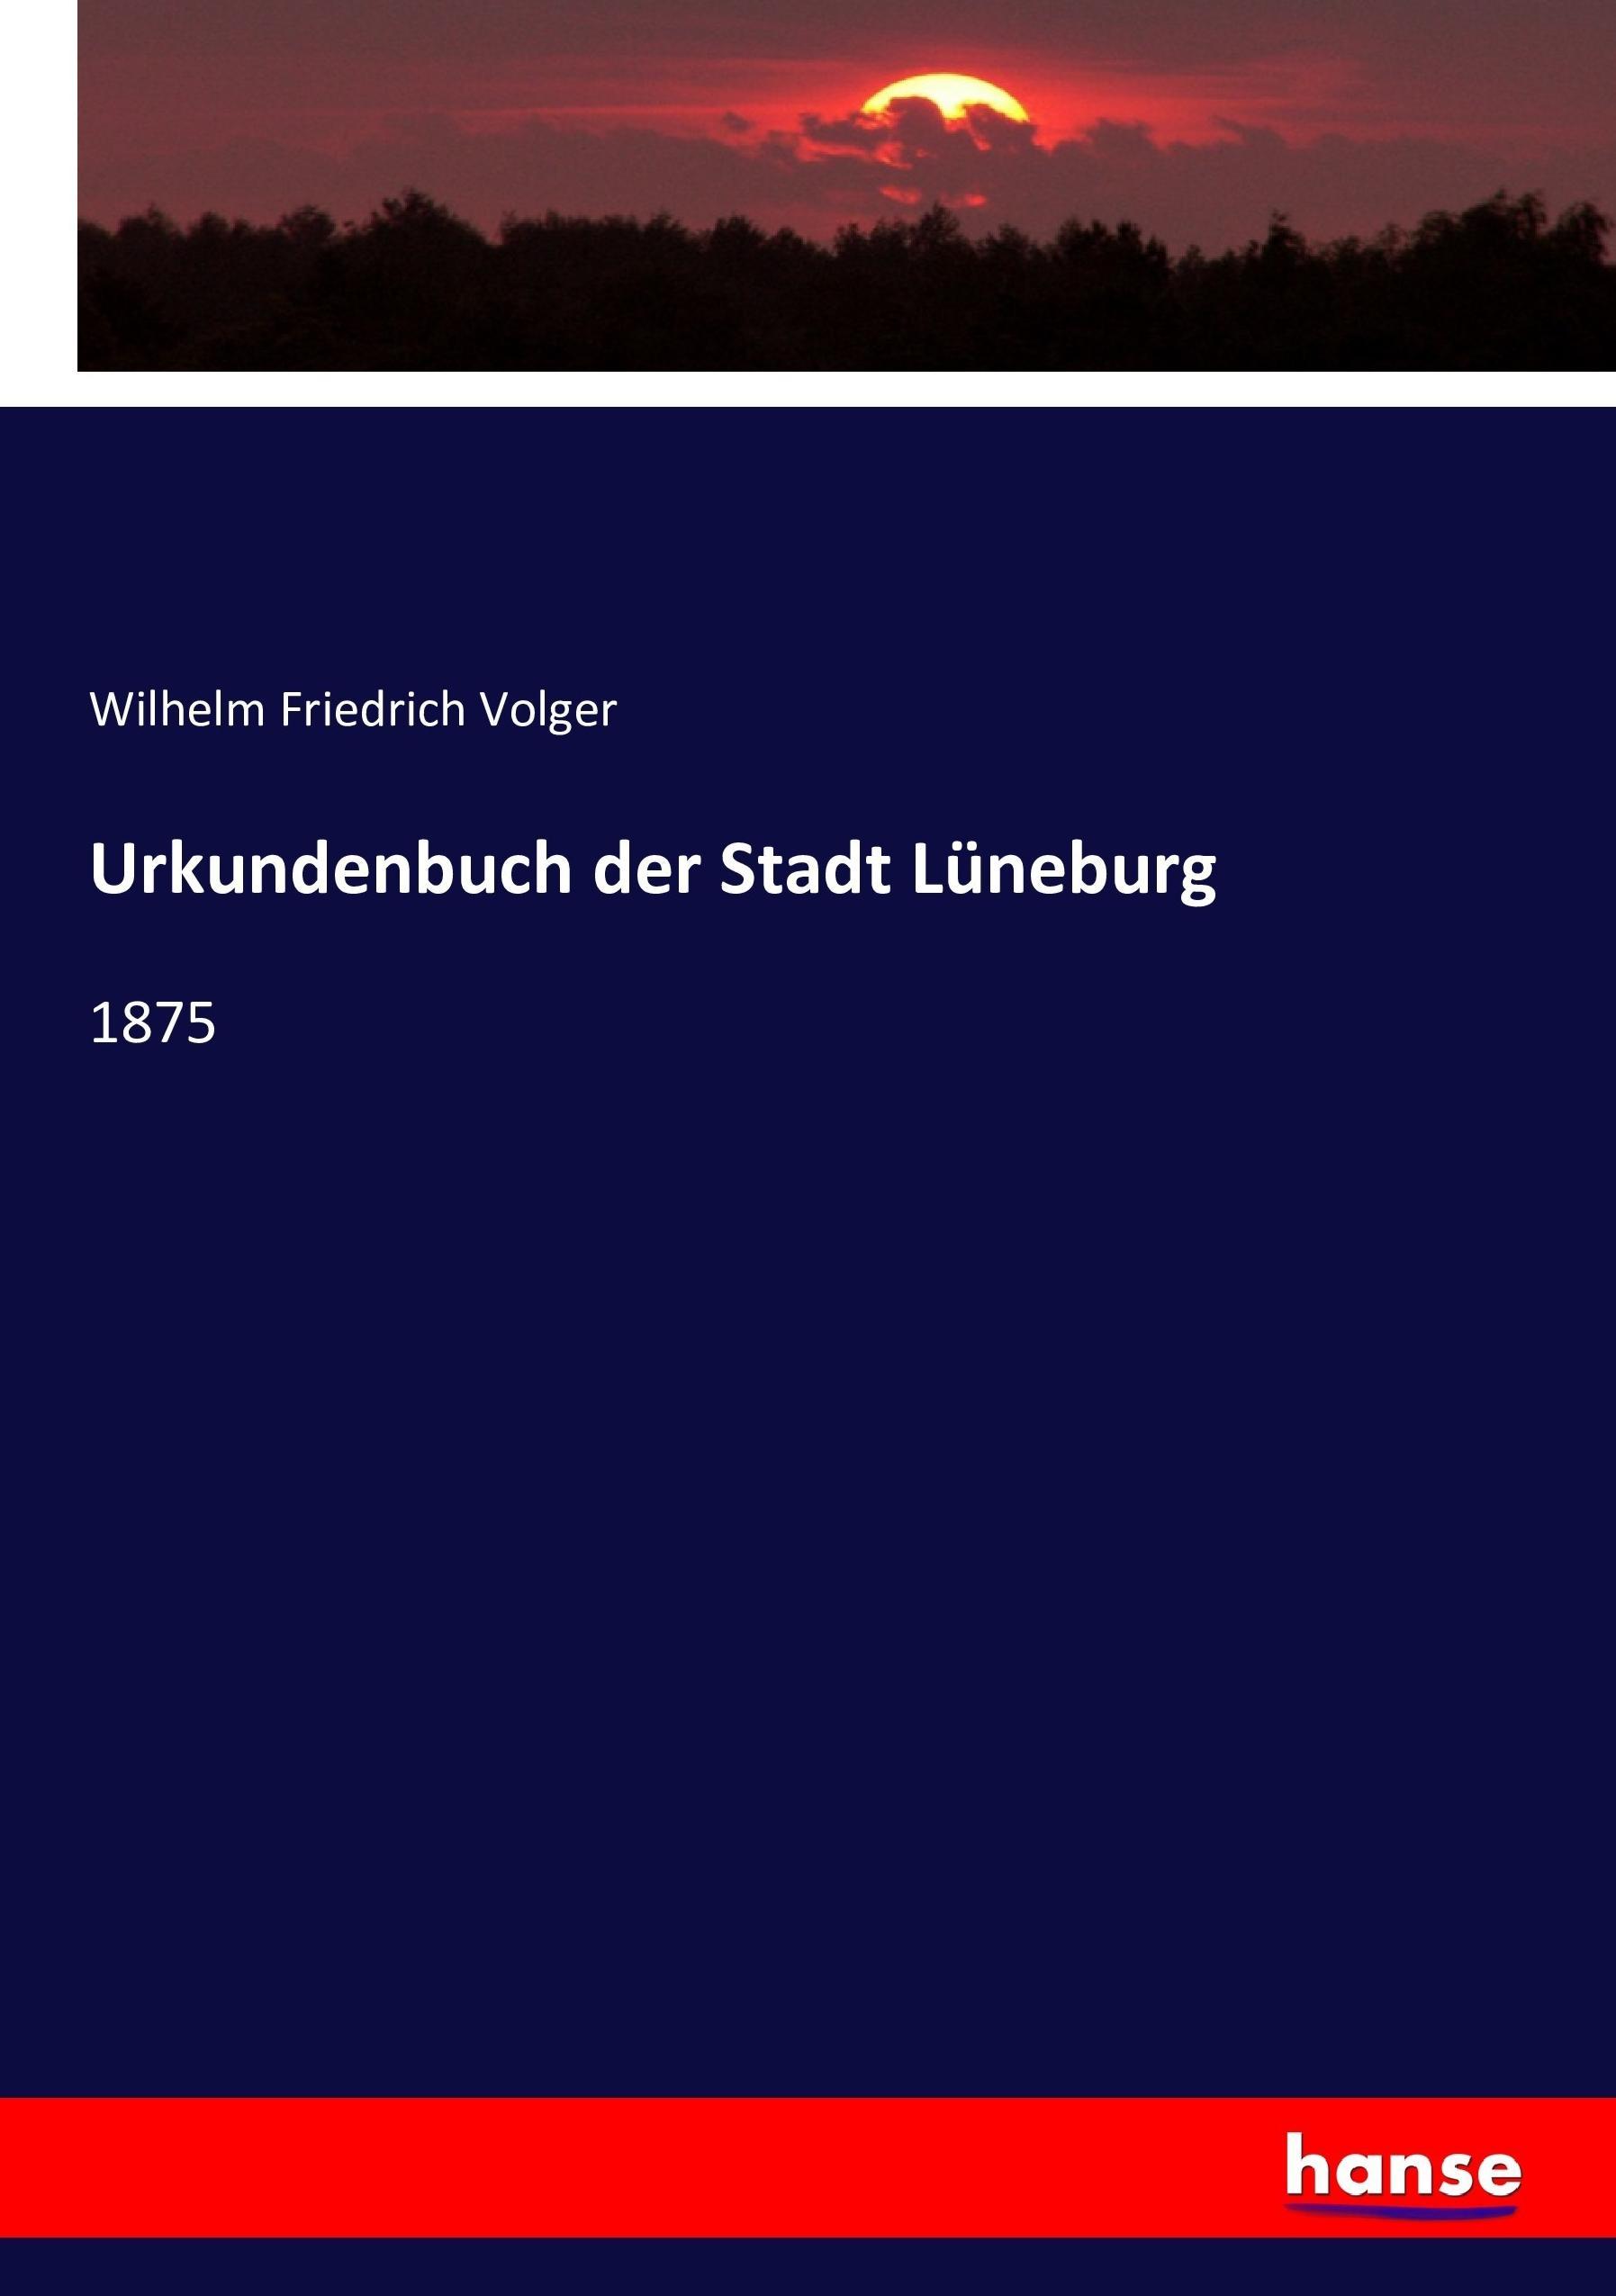 Urkundenbuch der Stadt Lüneburg | 1875 | Wilhelm Friedrich Volger | Taschenbuch | Paperback | 476 S. | Deutsch | 2016 | hansebooks | EAN 9783743376663 - Volger, Wilhelm Friedrich